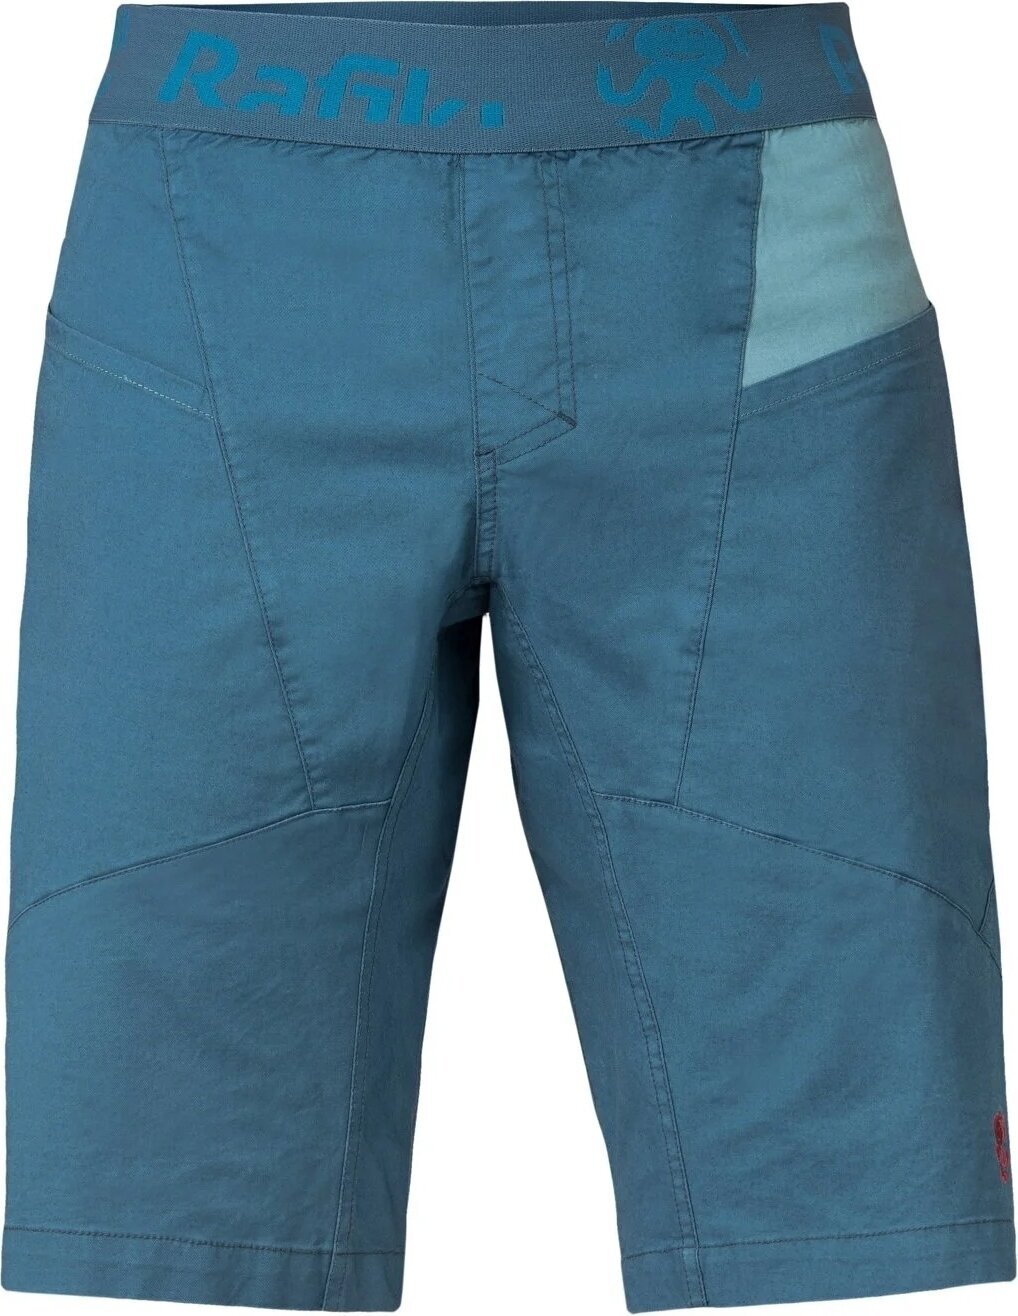 Outdoorové šortky Rafiki Megos Man Shorts Stargazer/Atlantic XL Outdoorové šortky